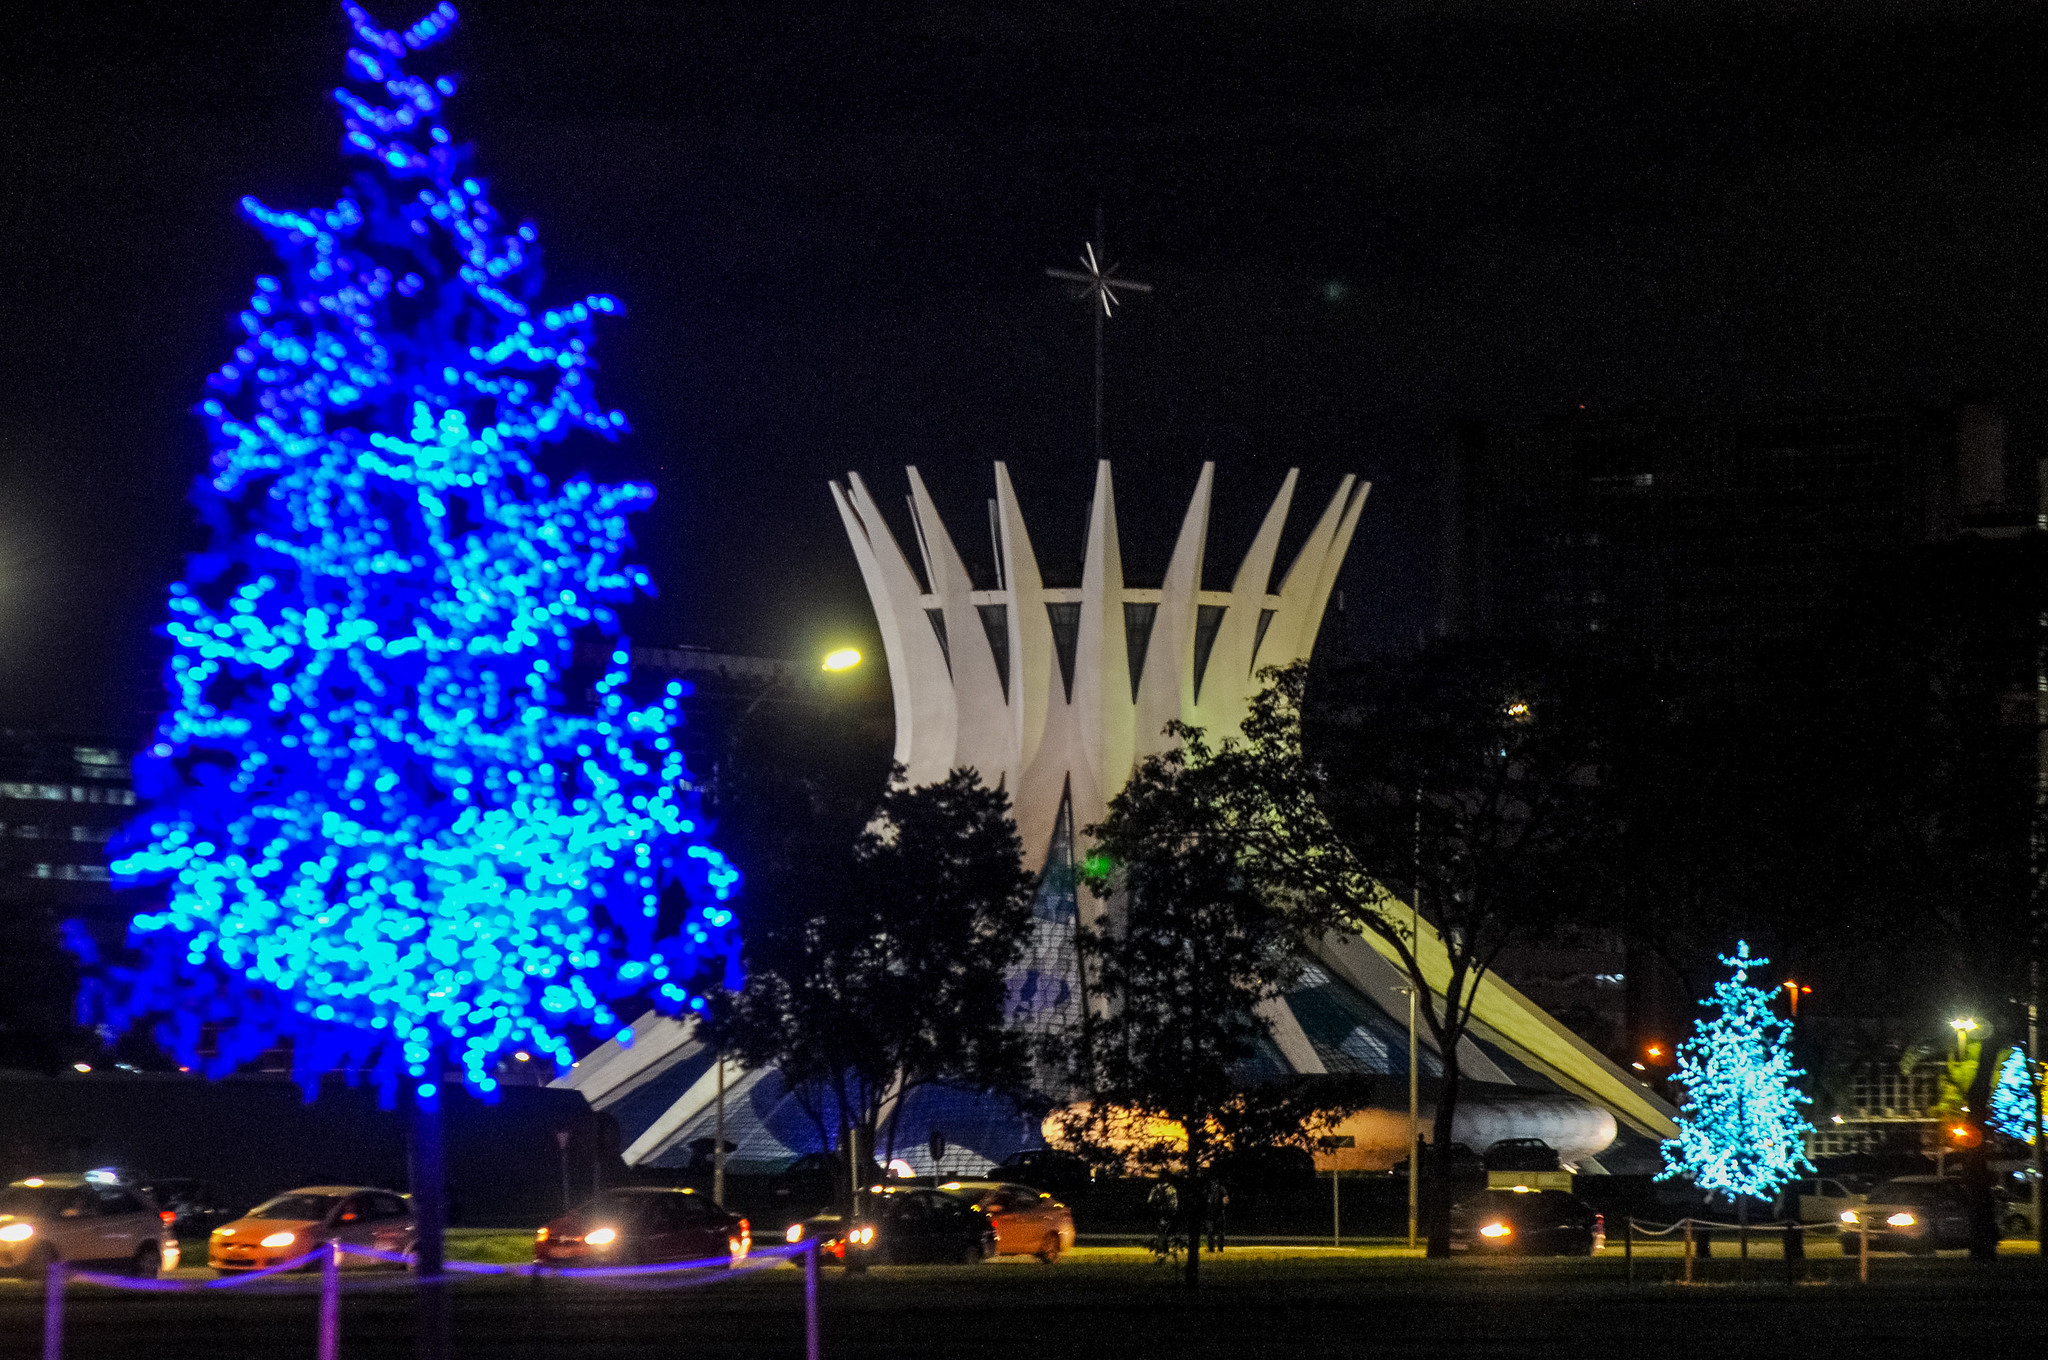 Brasília Iluminada